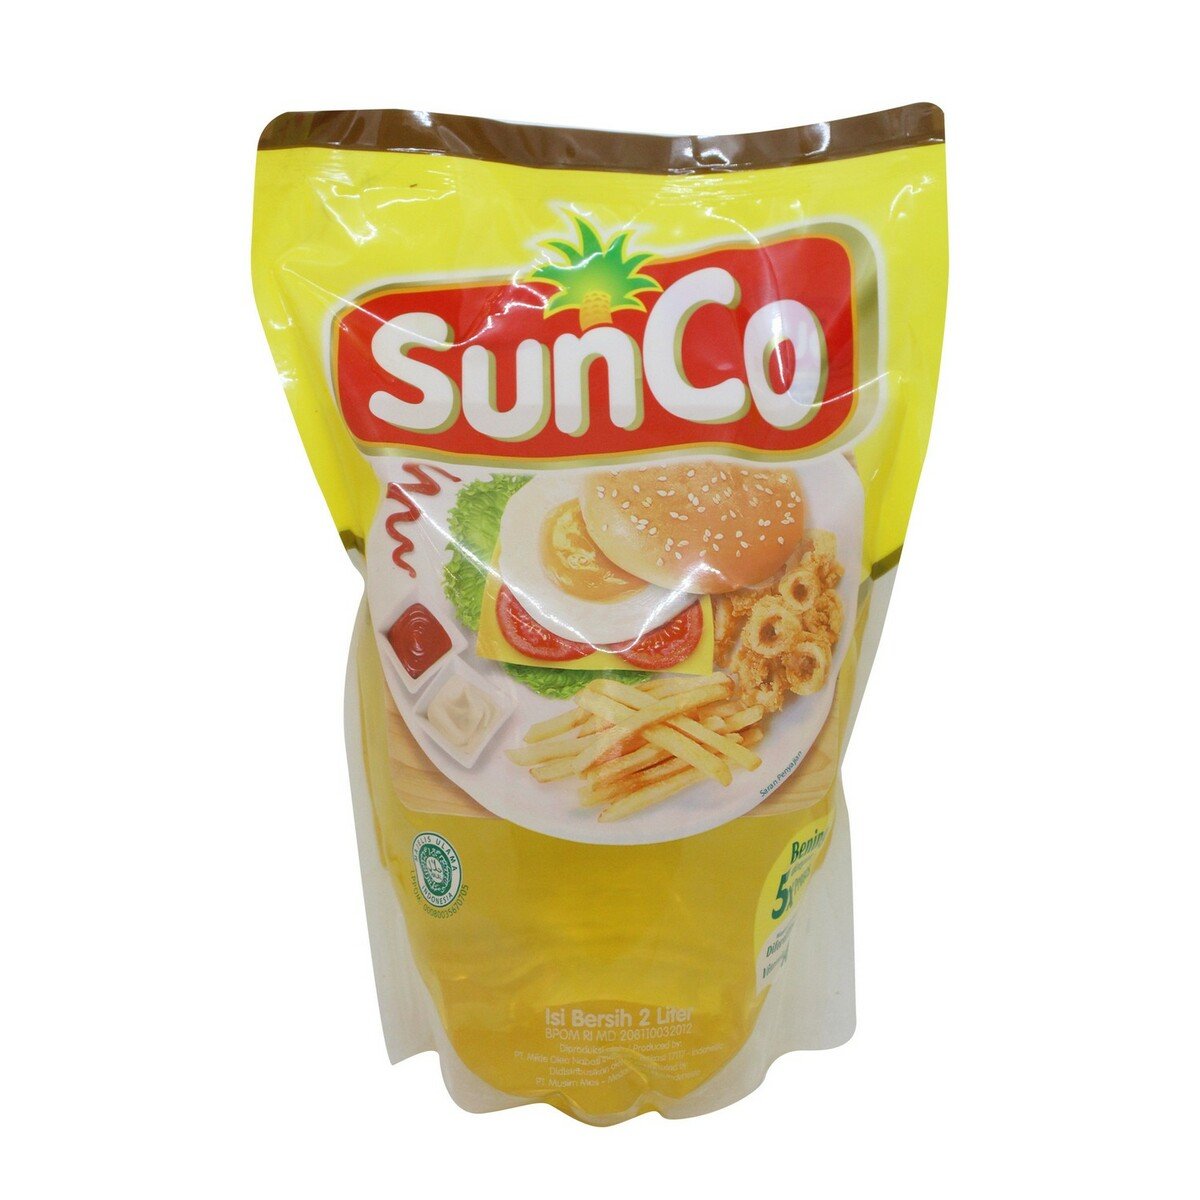 Sunco Minyak Goreng Pouch 2Litre